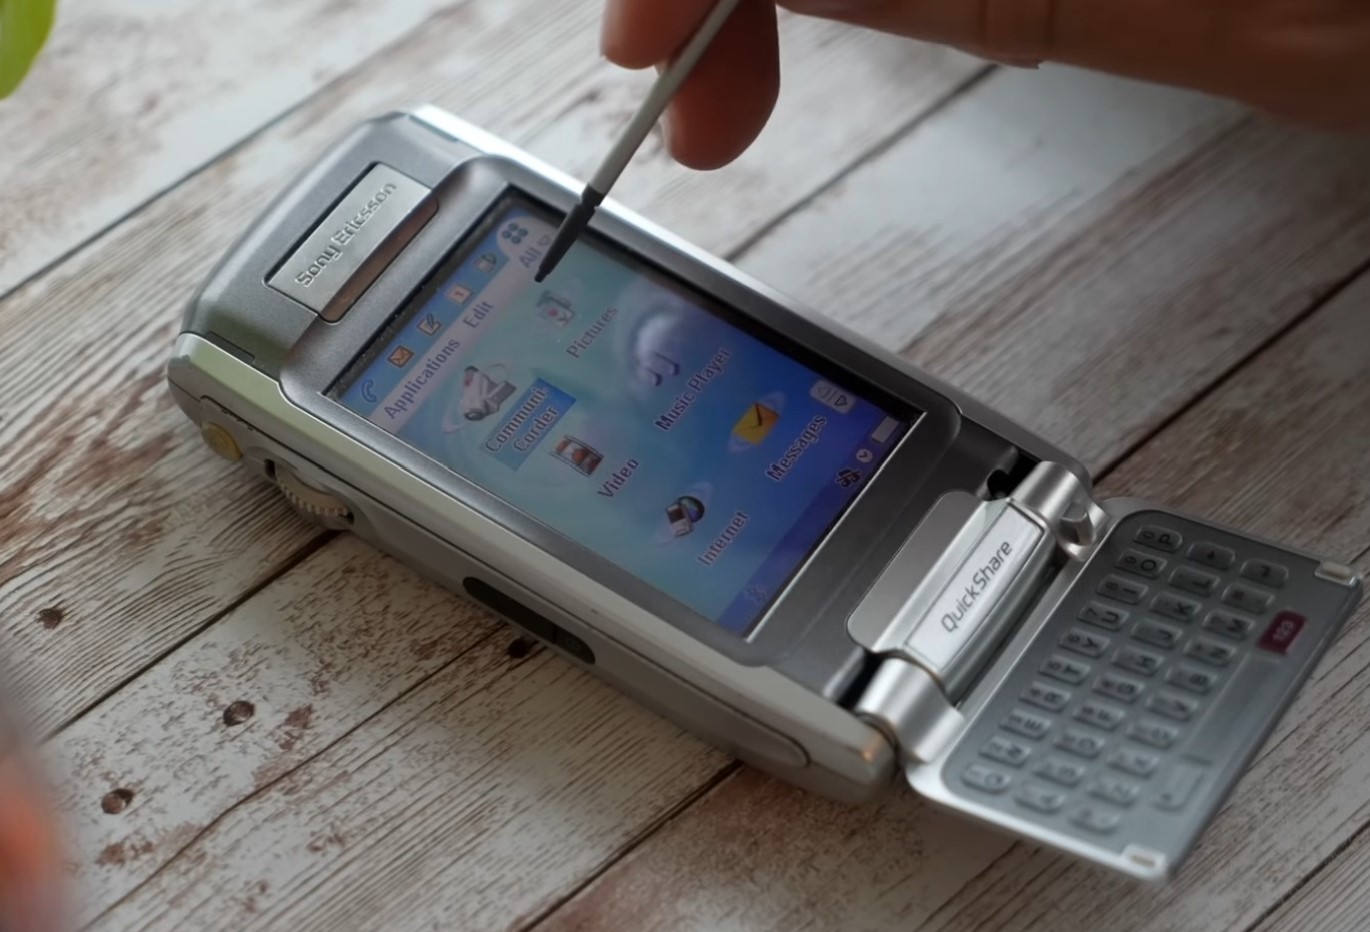 Symbian Anna: Sự vùng vẫy của Nokia khi thời đại smartphone chuyển mình sang cảm ứng- Ảnh 3.